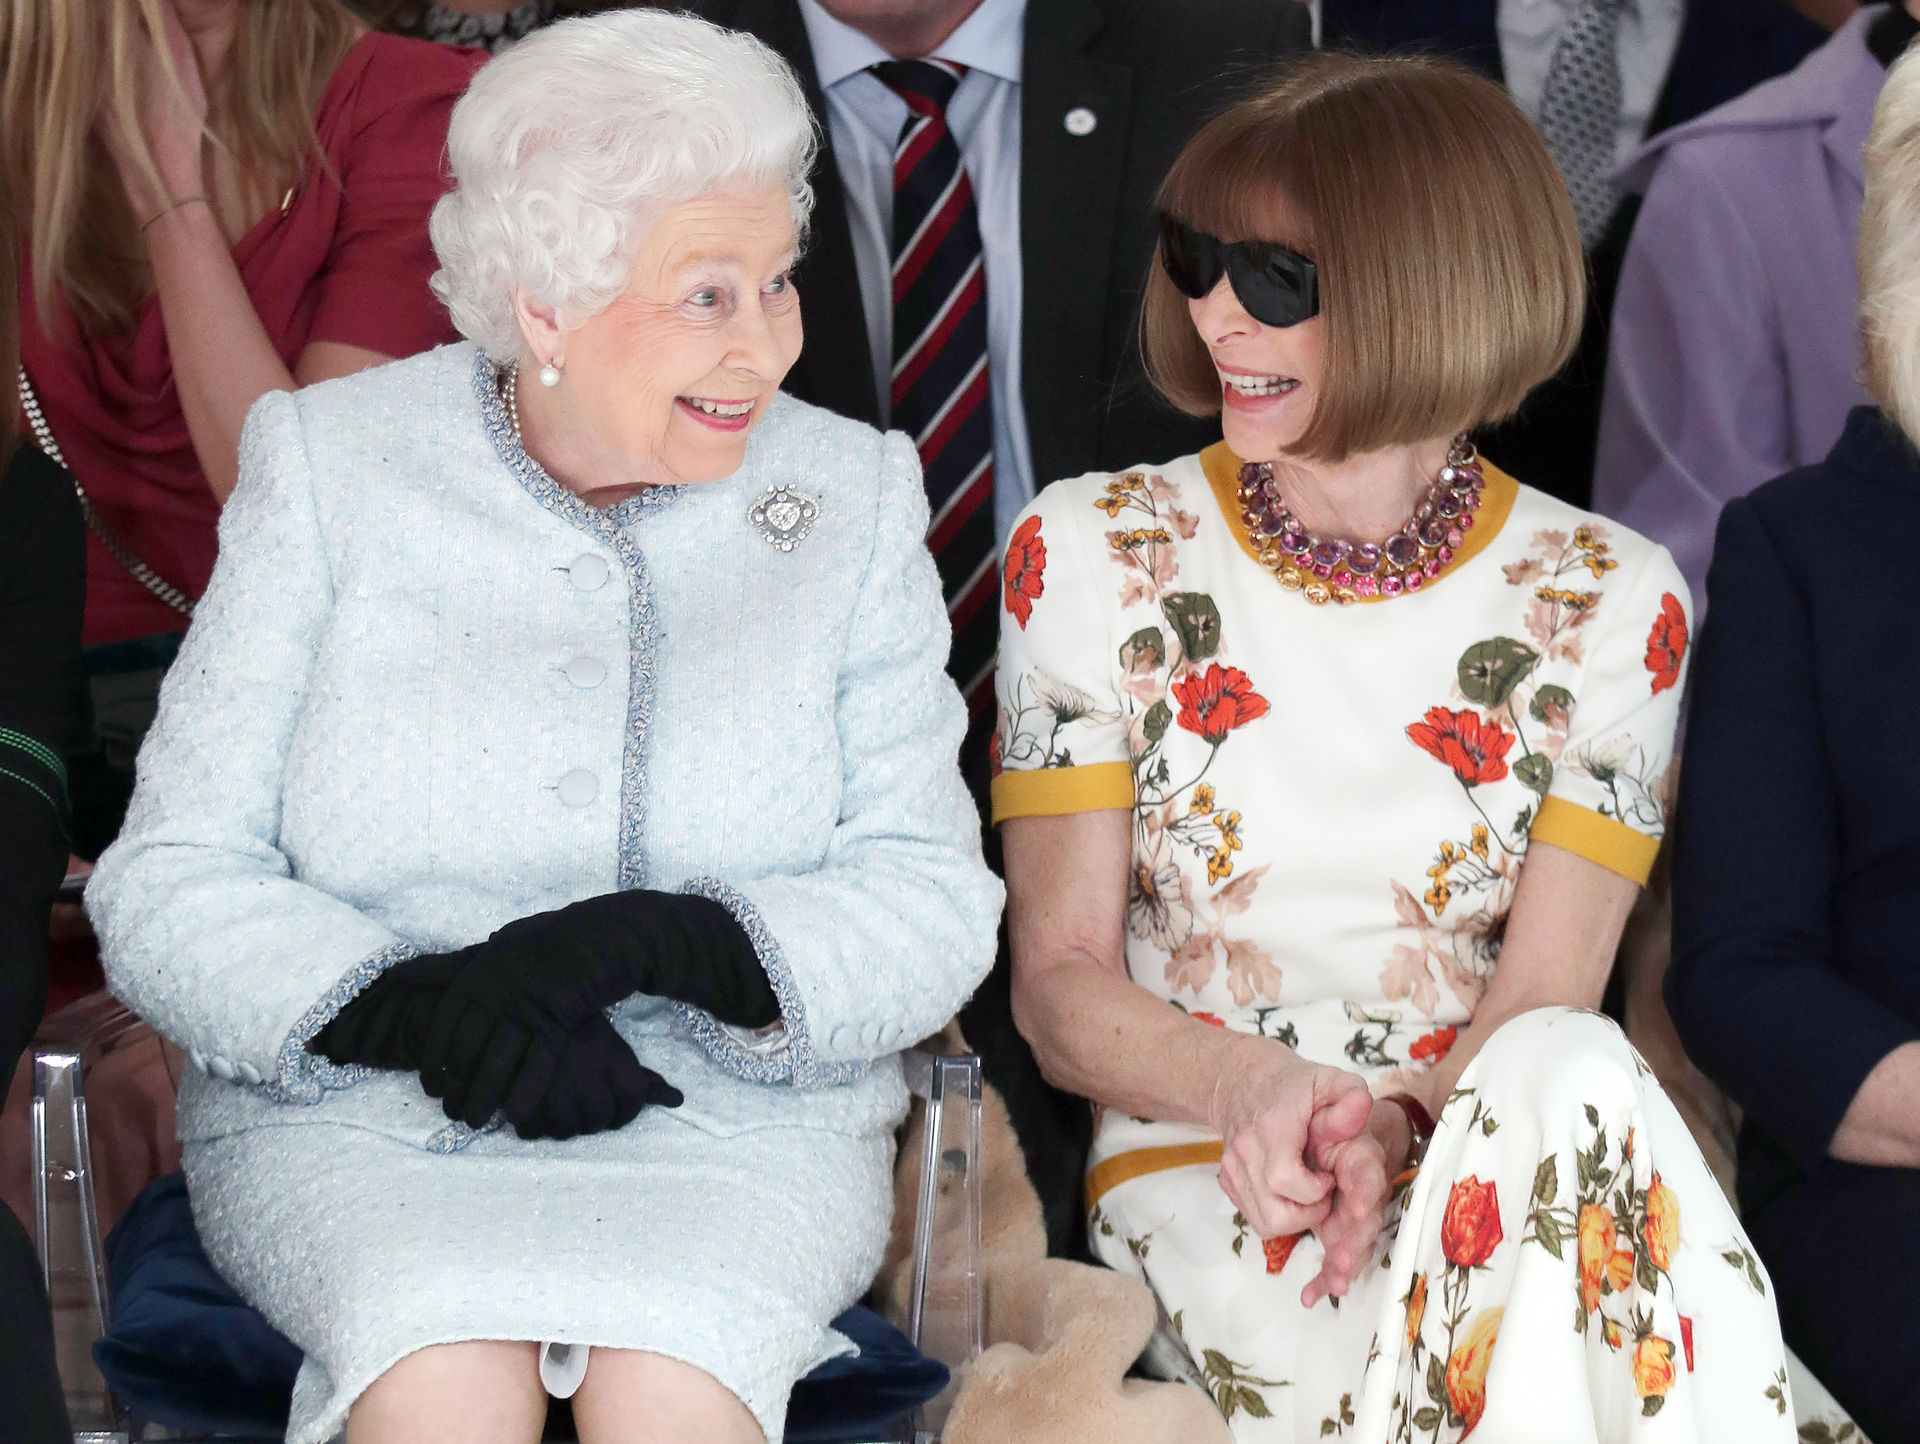   Nữ hoàng Elizabeth II ngồi cạnh Anna Wintour khi xem chương trình của Richard Quinn. Đây là lần đầu tiên Nữ hoàng Anh đi xem chương trình biểu diễn thời trang.  